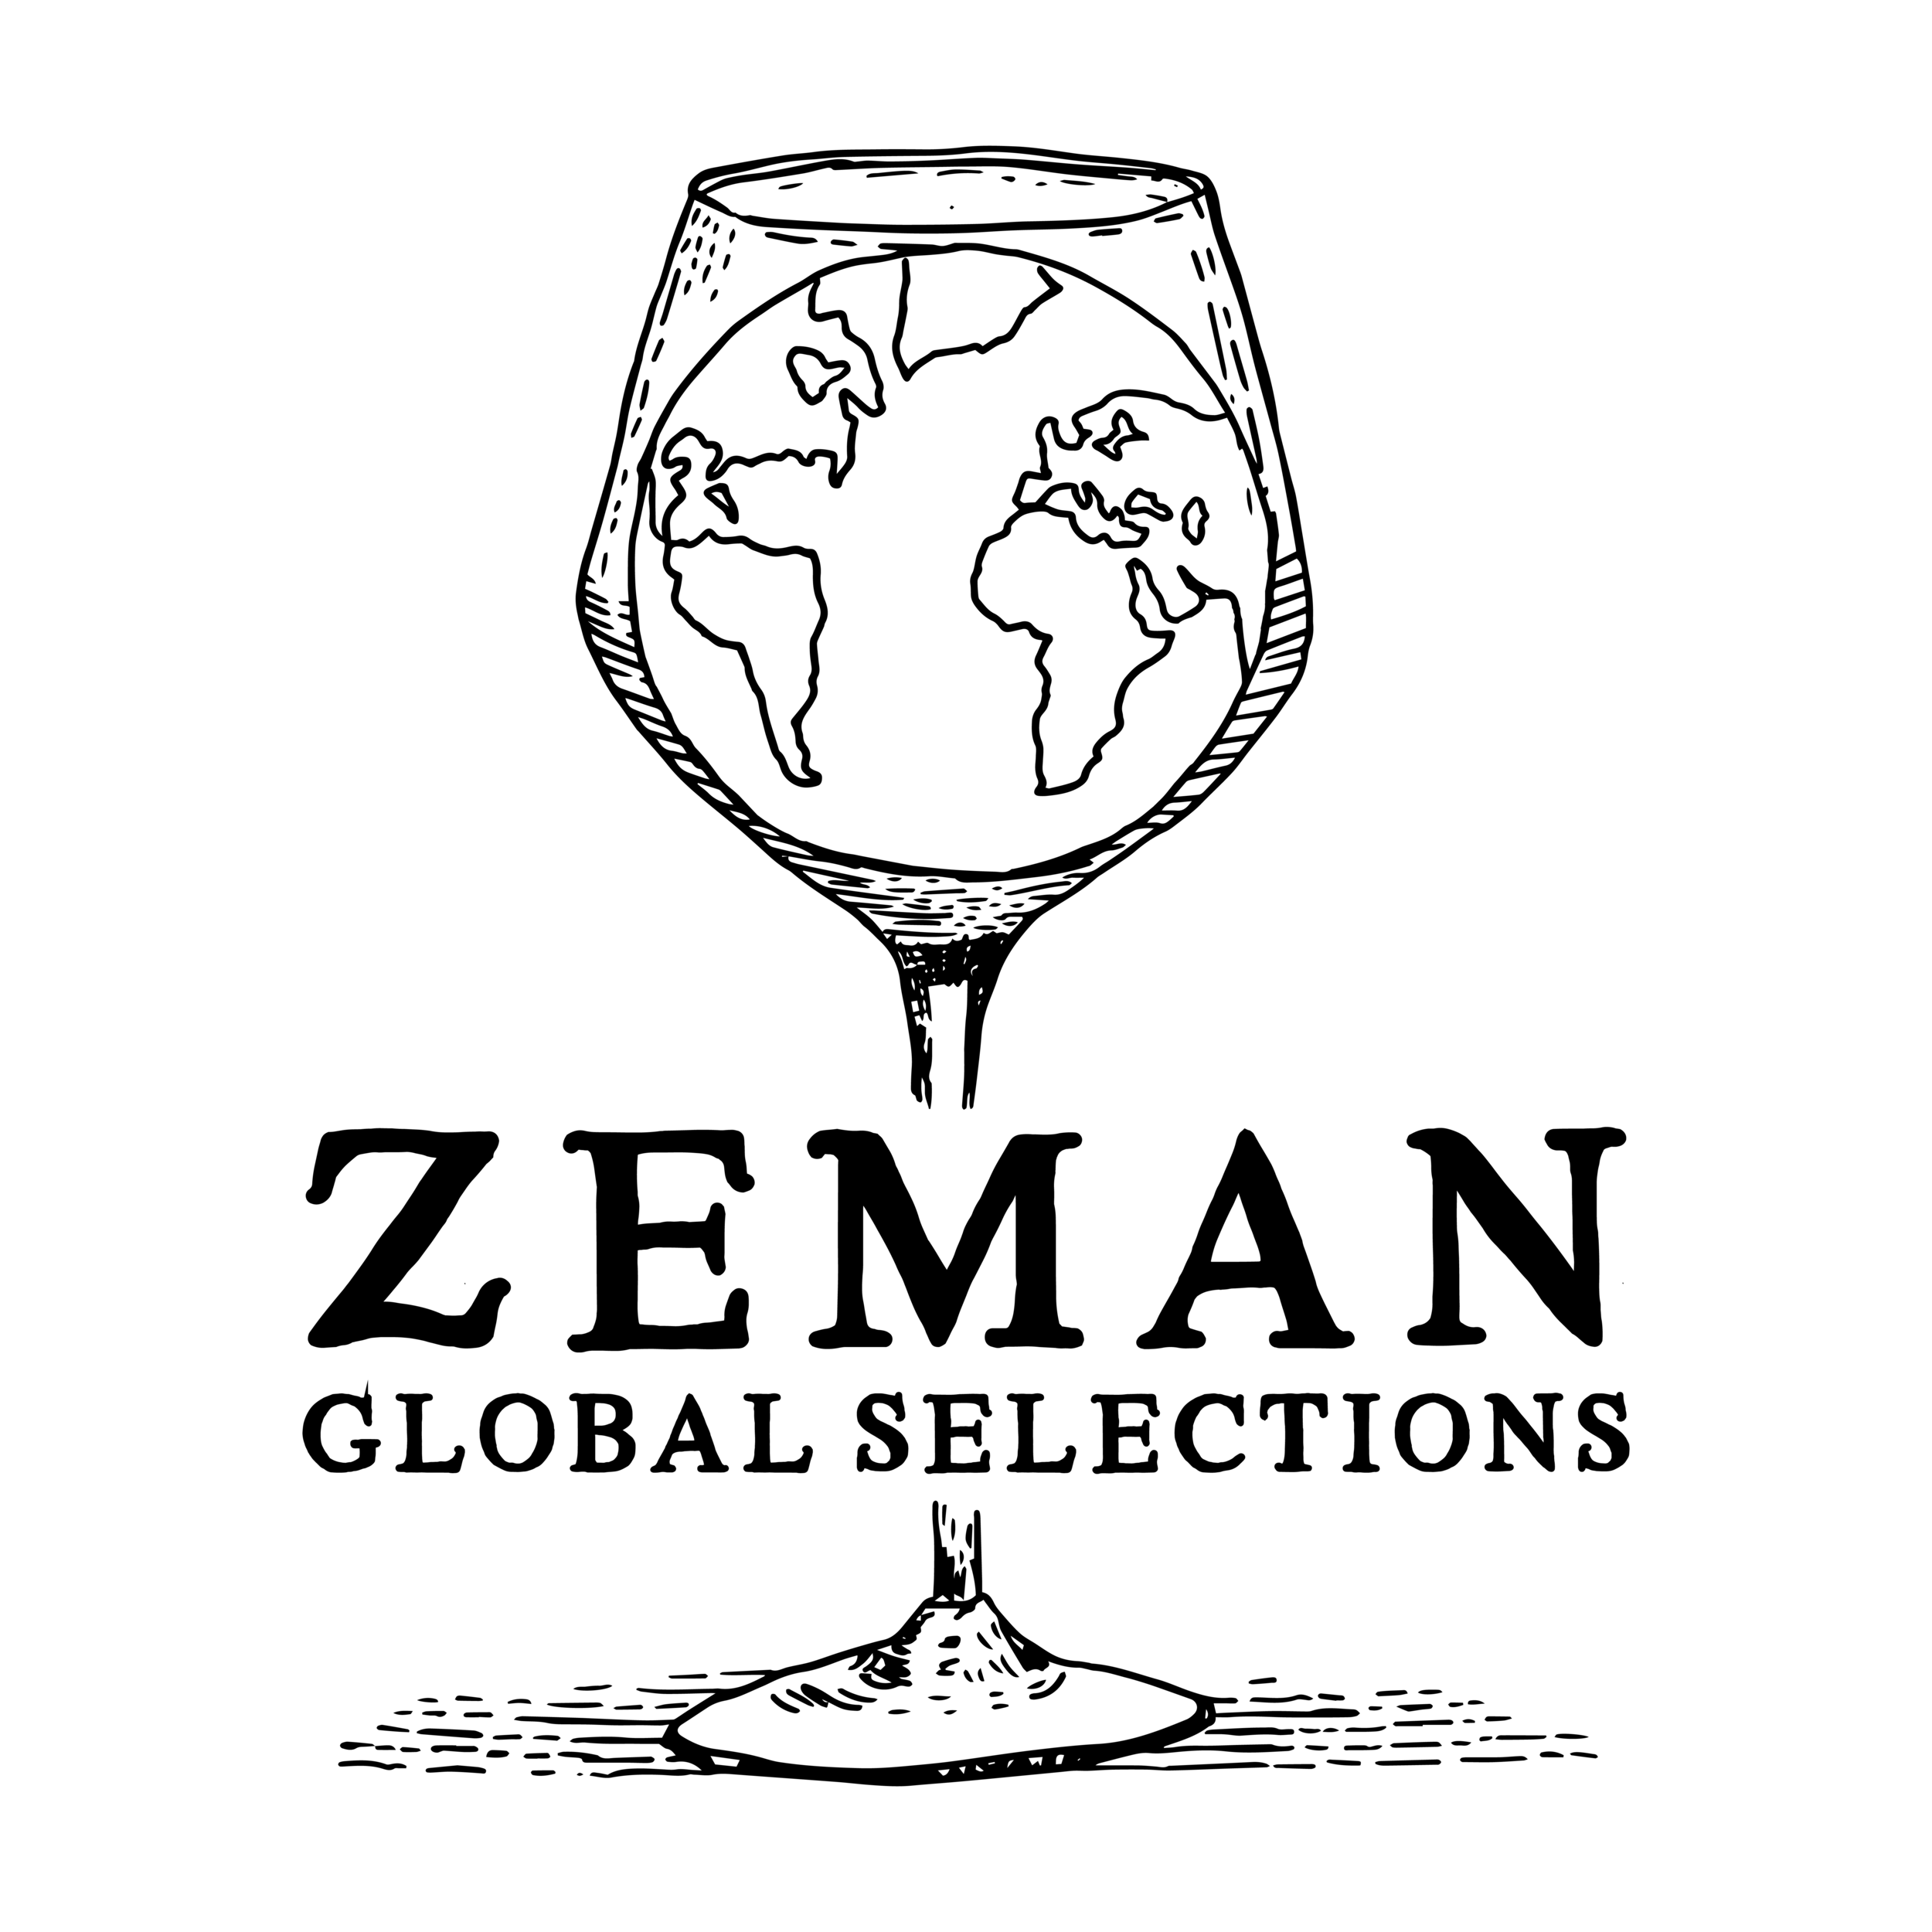 Zeman_Logo(B)_Final_Black_Square-01.png